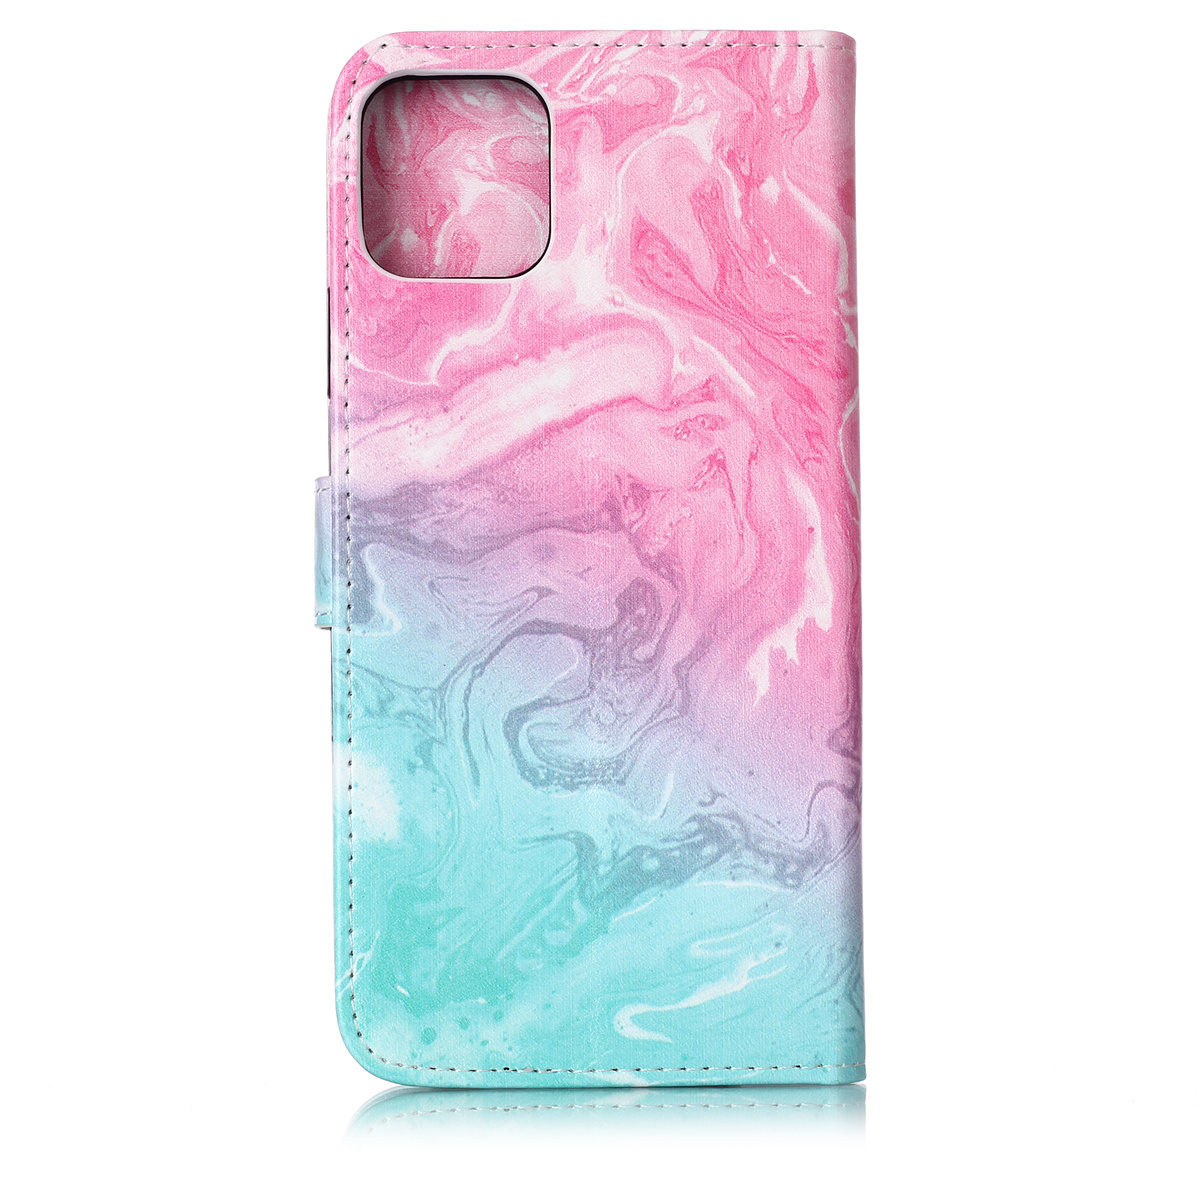 Trendigt läderfodral ställ, marmor, iPhone 11 Pro Max, rosa/blå